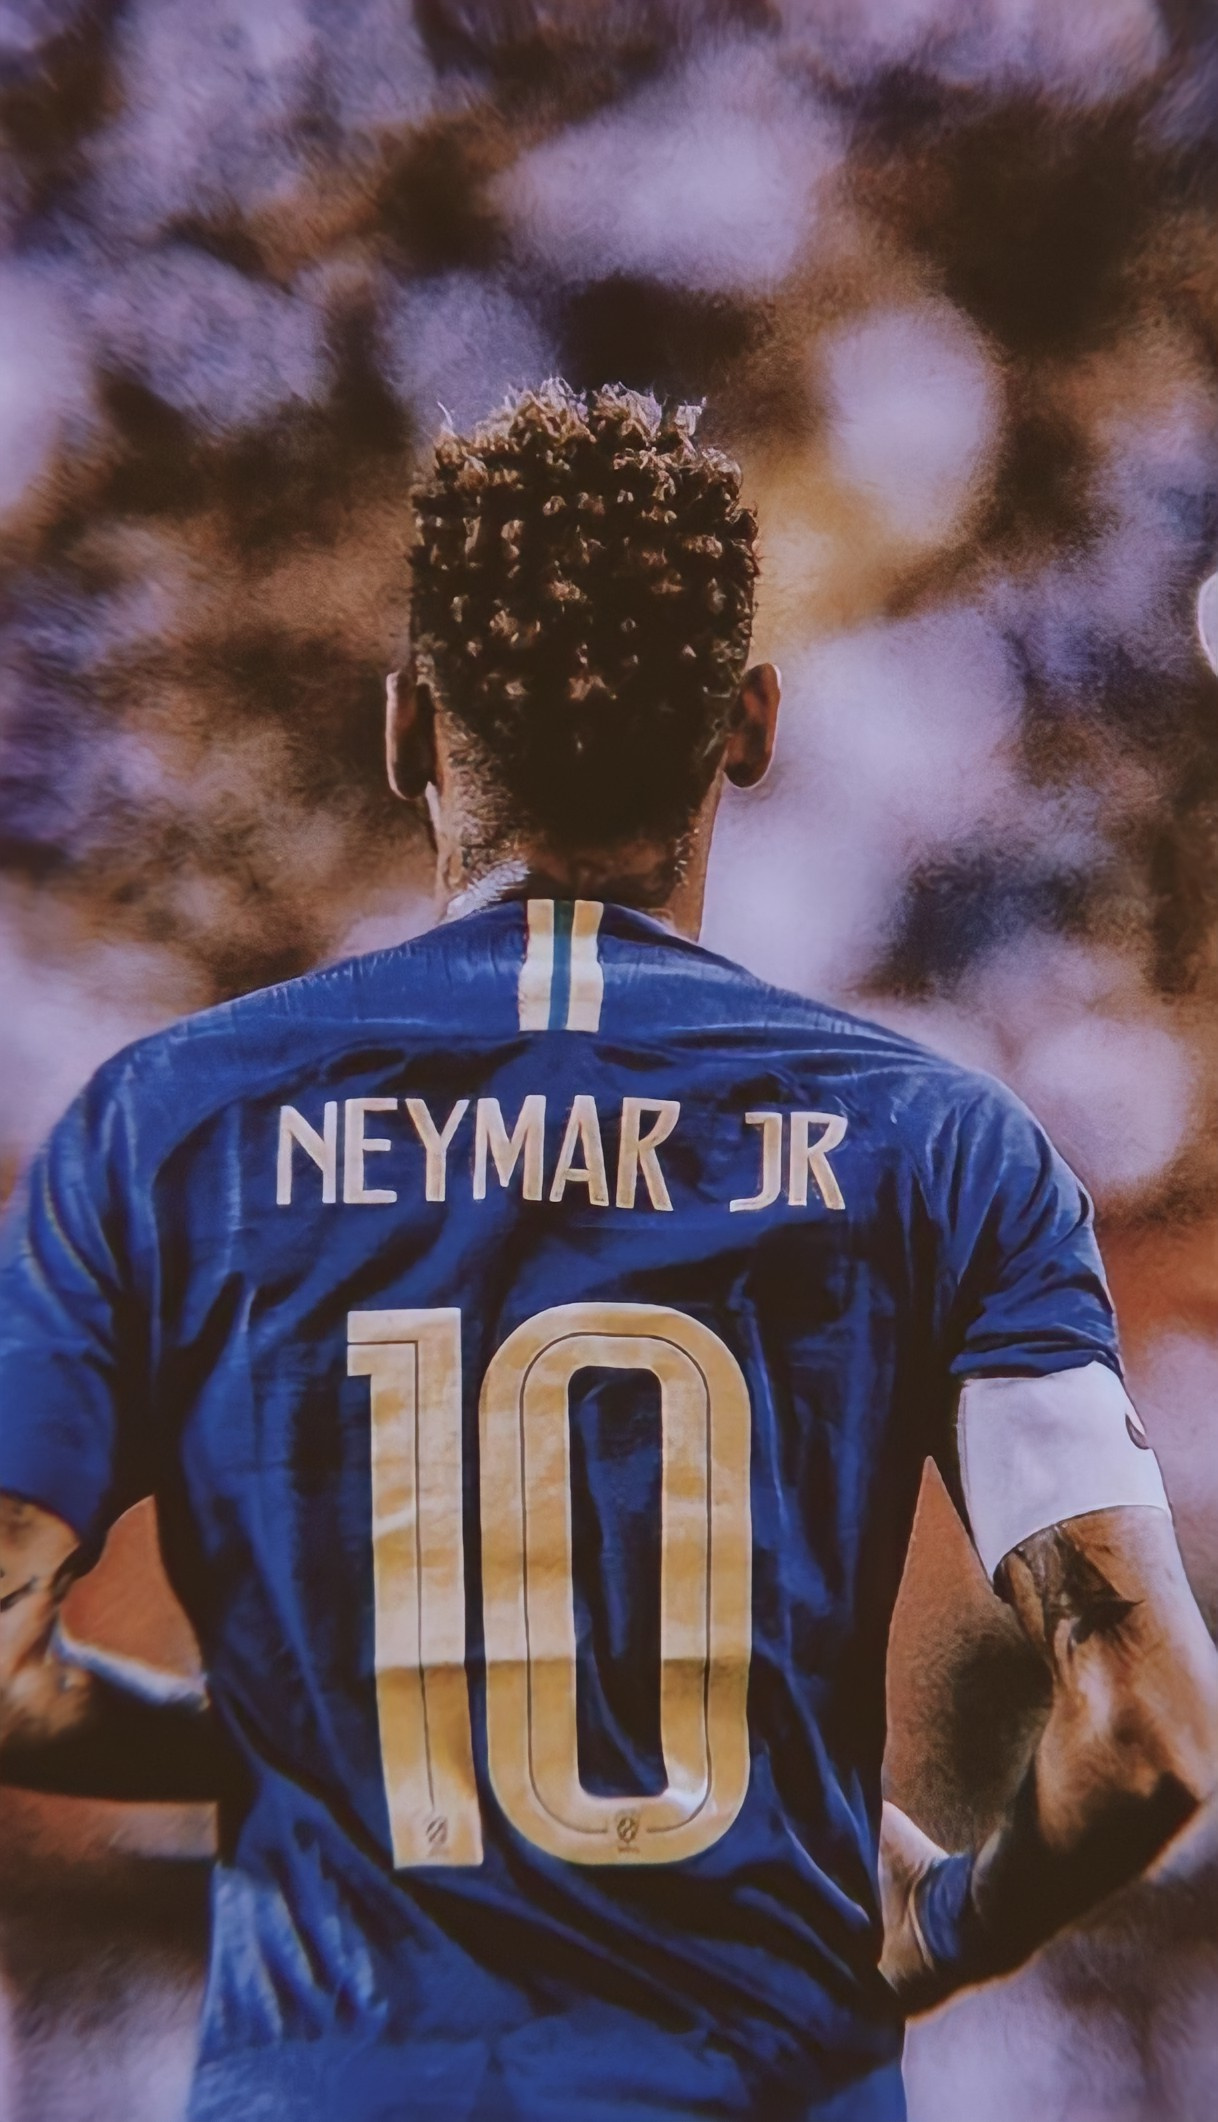 Neymar Jr Brazil 2022 Wallpapers là sự kết hợp hoàn hảo giữa hai yếu tố: tinh thần bóng đá và nghệ thuật. Hãy trang trí màn hình của bạn với những hình ảnh đẹp và sống động, để cùng đồng hành với Neymar trong hành trình chinh phục World Cup 2022 của đội tuyển Brazil.